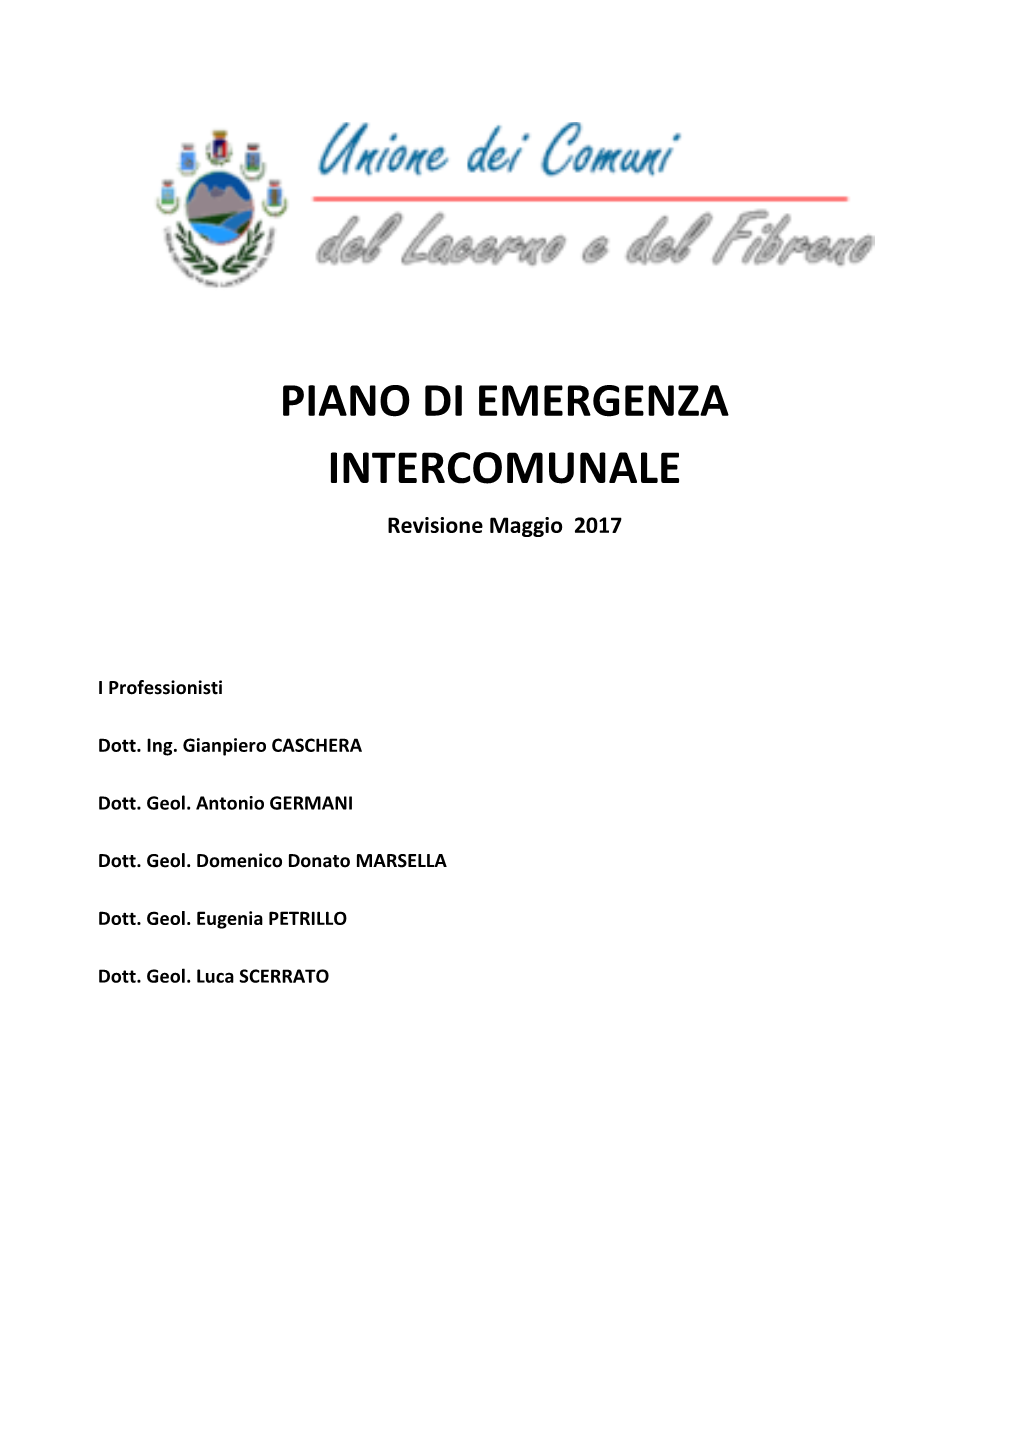 PIANO DI EMERGENZA INTERCOMUNALE Revisione Maggio 2017